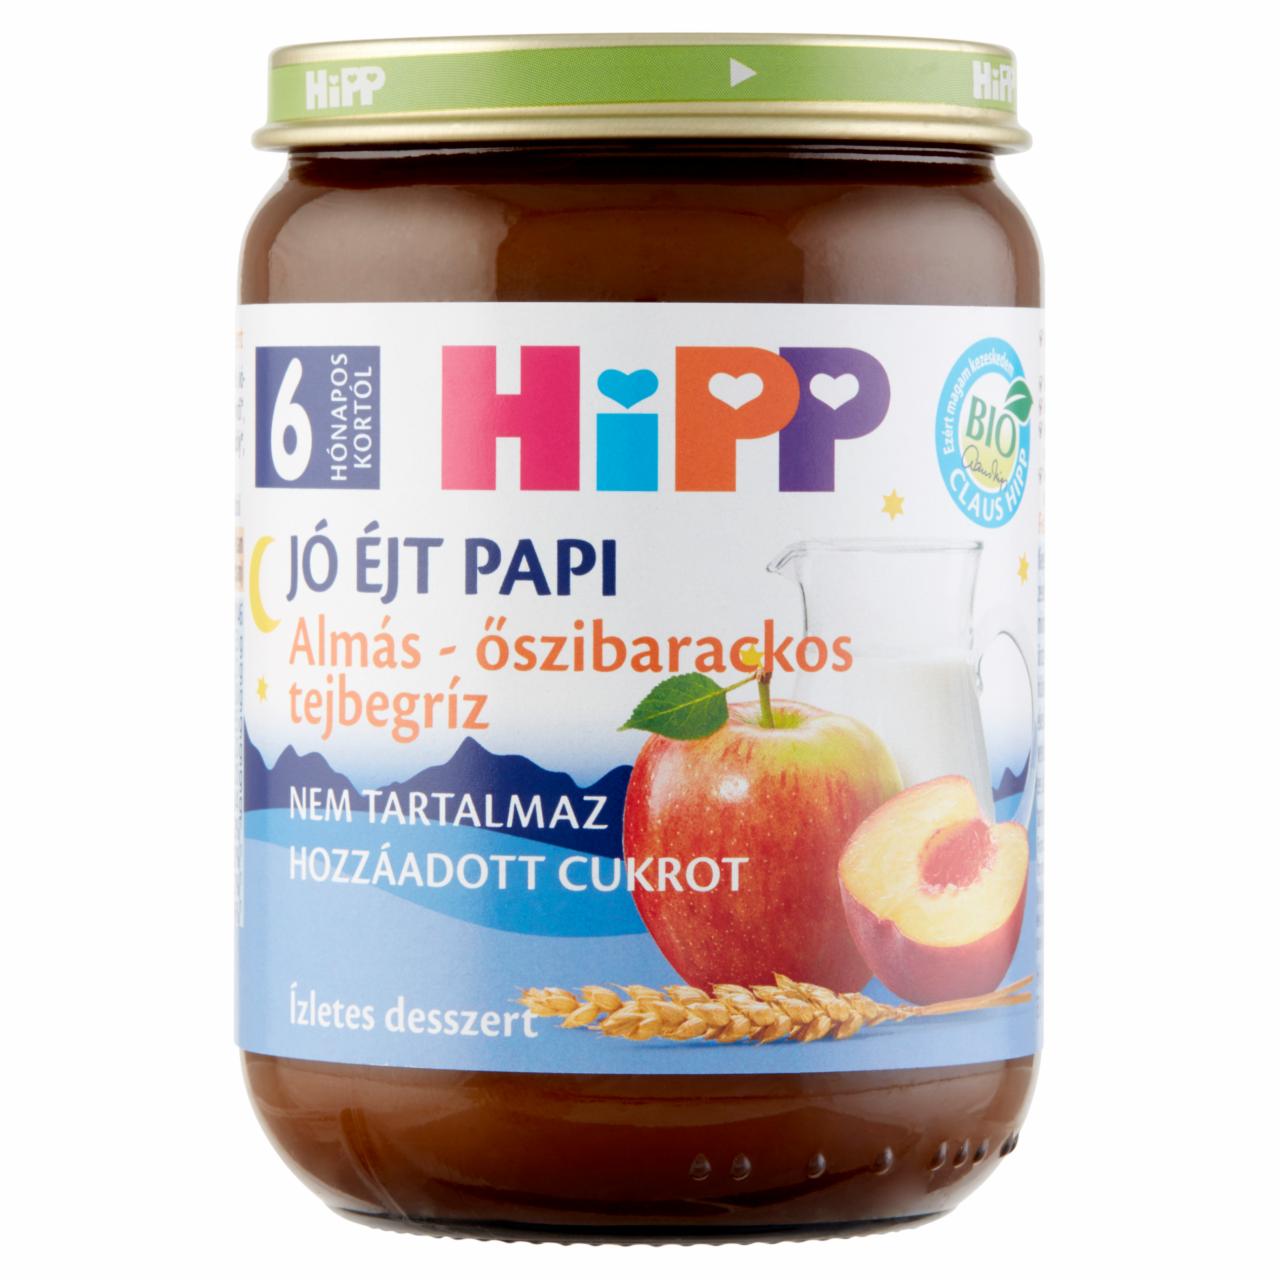 Képek - HiPP Jó Éjt Papi BIO almás-őszibarackos tejbegríz bébidesszert 6 hónapos kortól 190 g